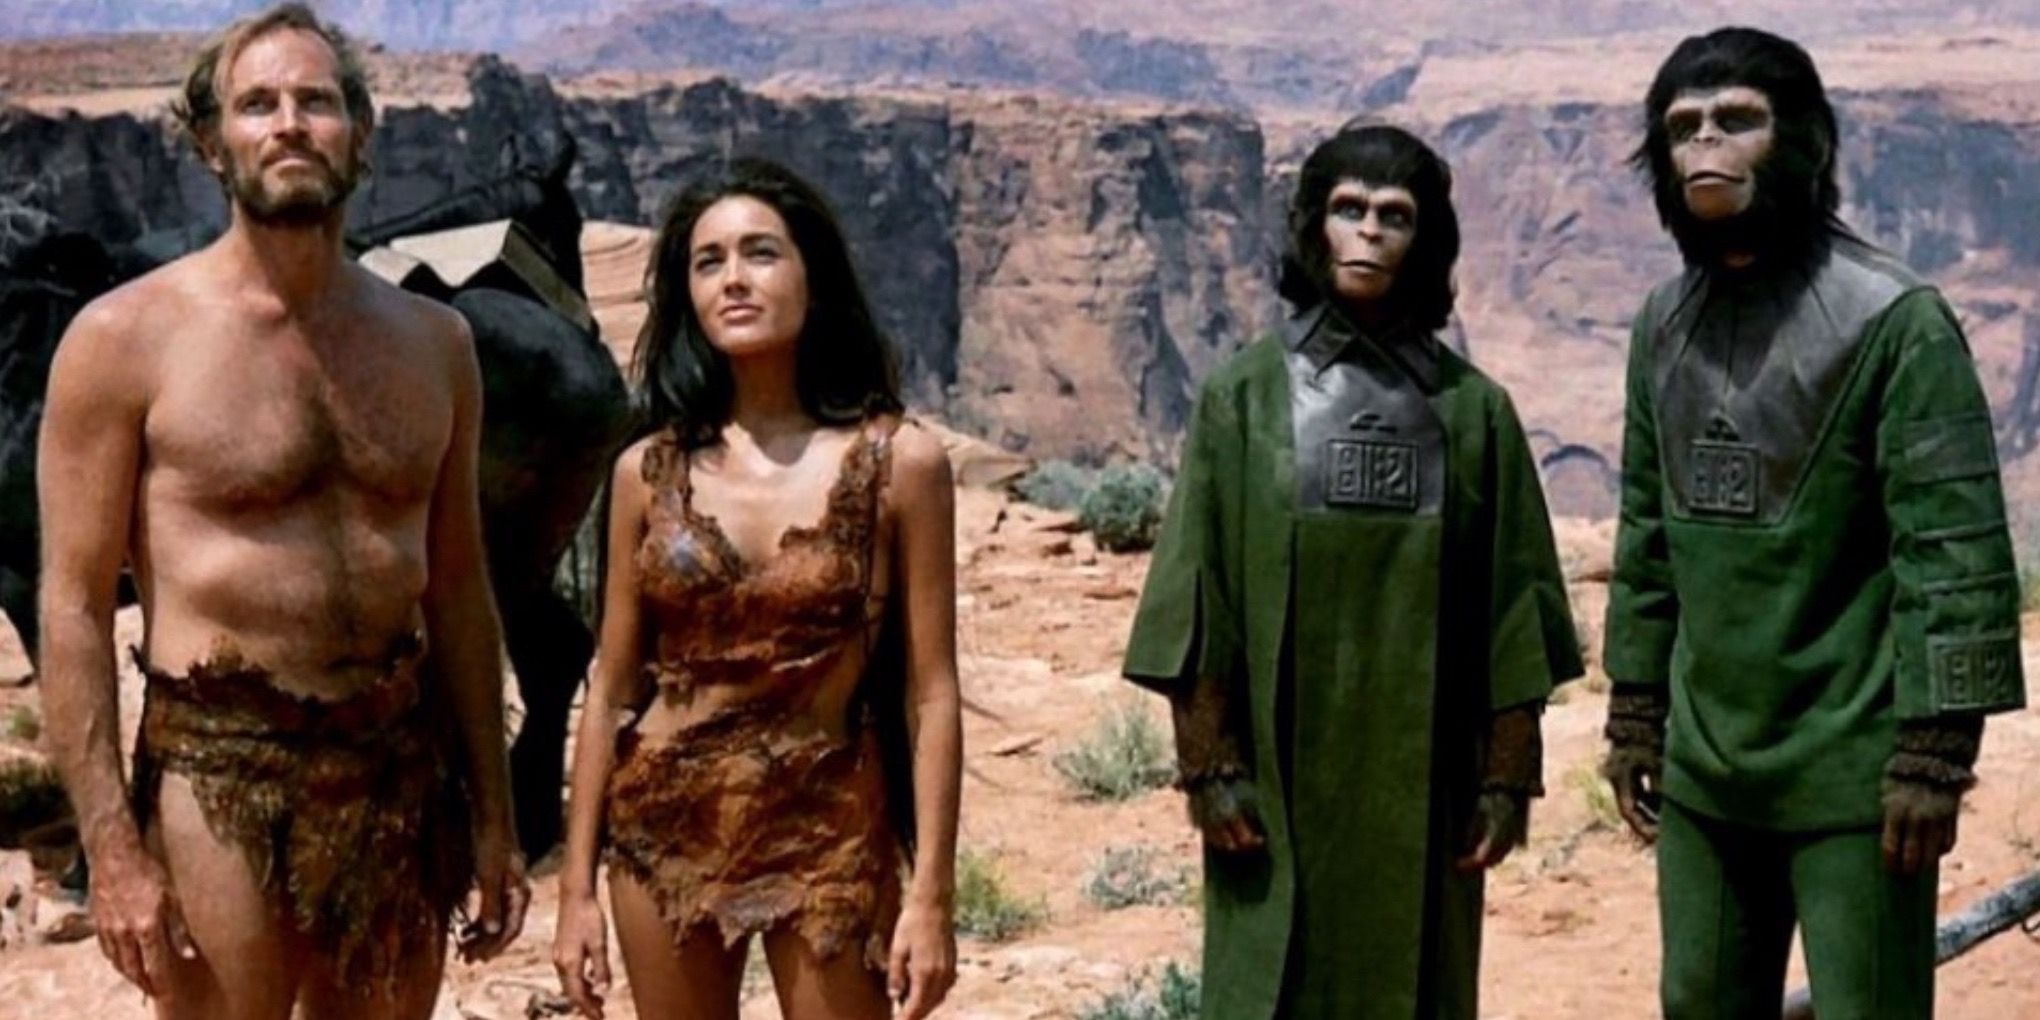 Le casting de La Planète des singes (1968)